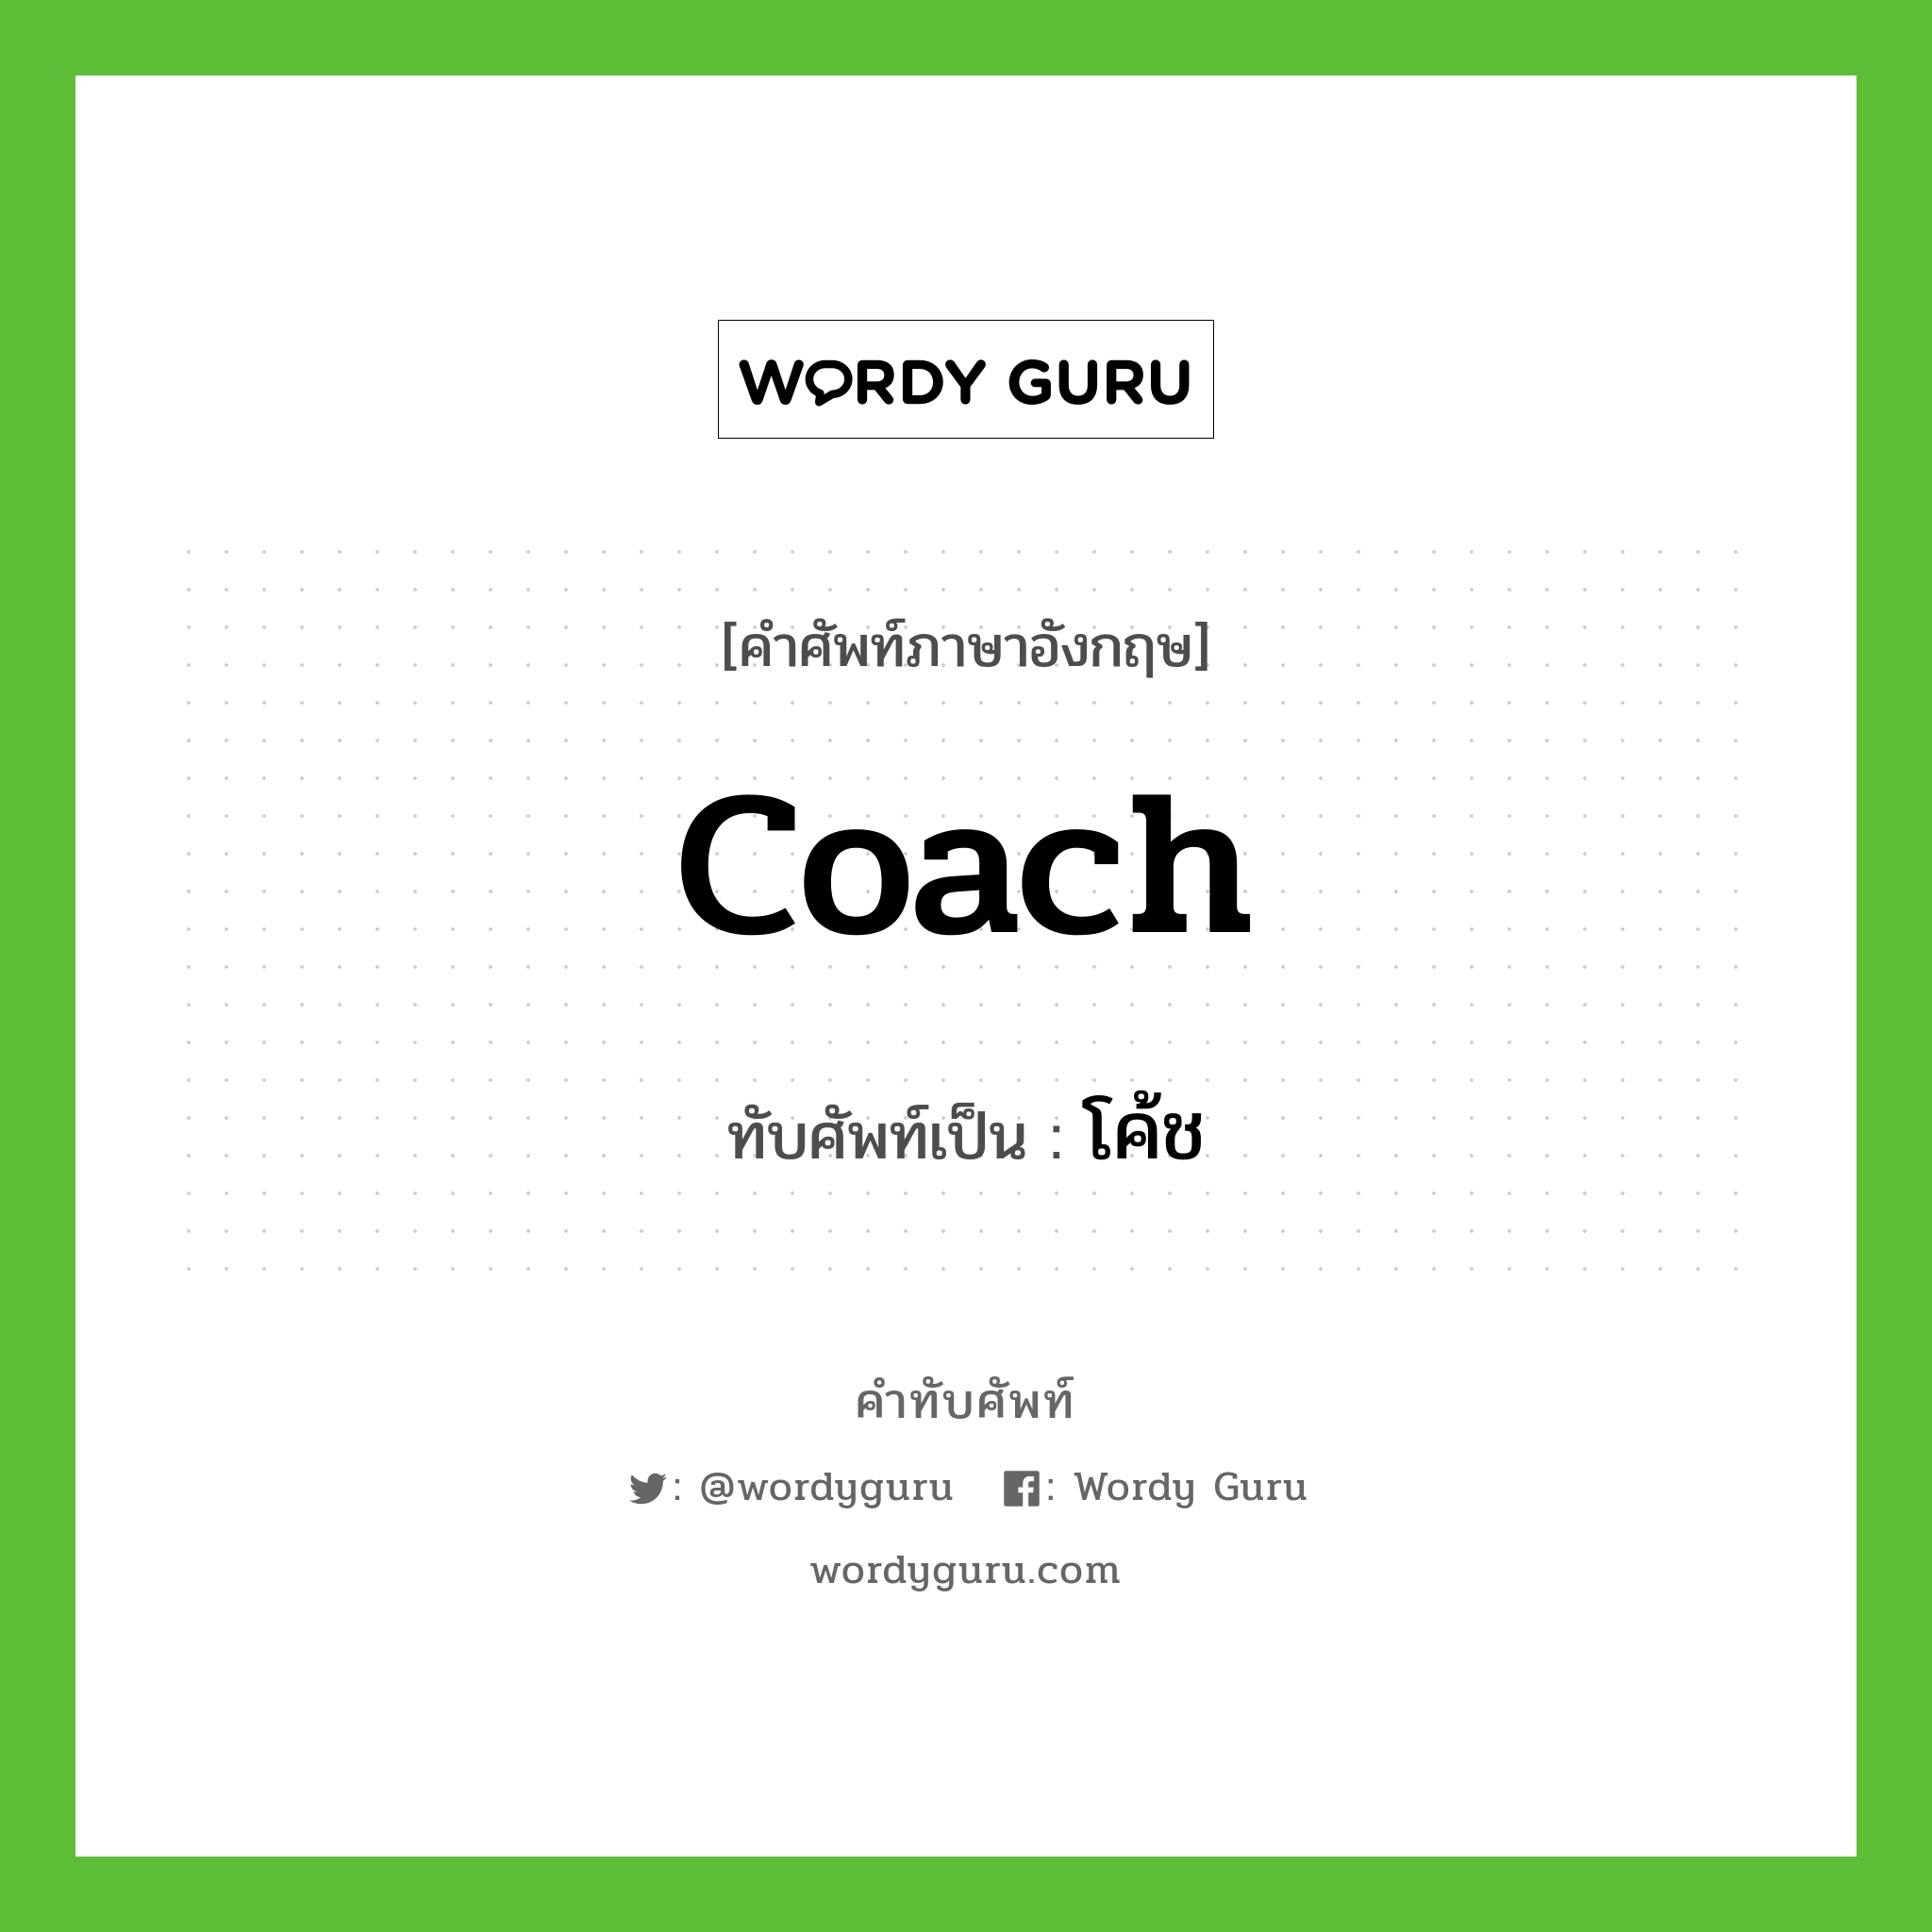 coach เขียนเป็นคำไทยว่าอะไร?, คำศัพท์ภาษาอังกฤษ coach ทับศัพท์เป็น โค้ช